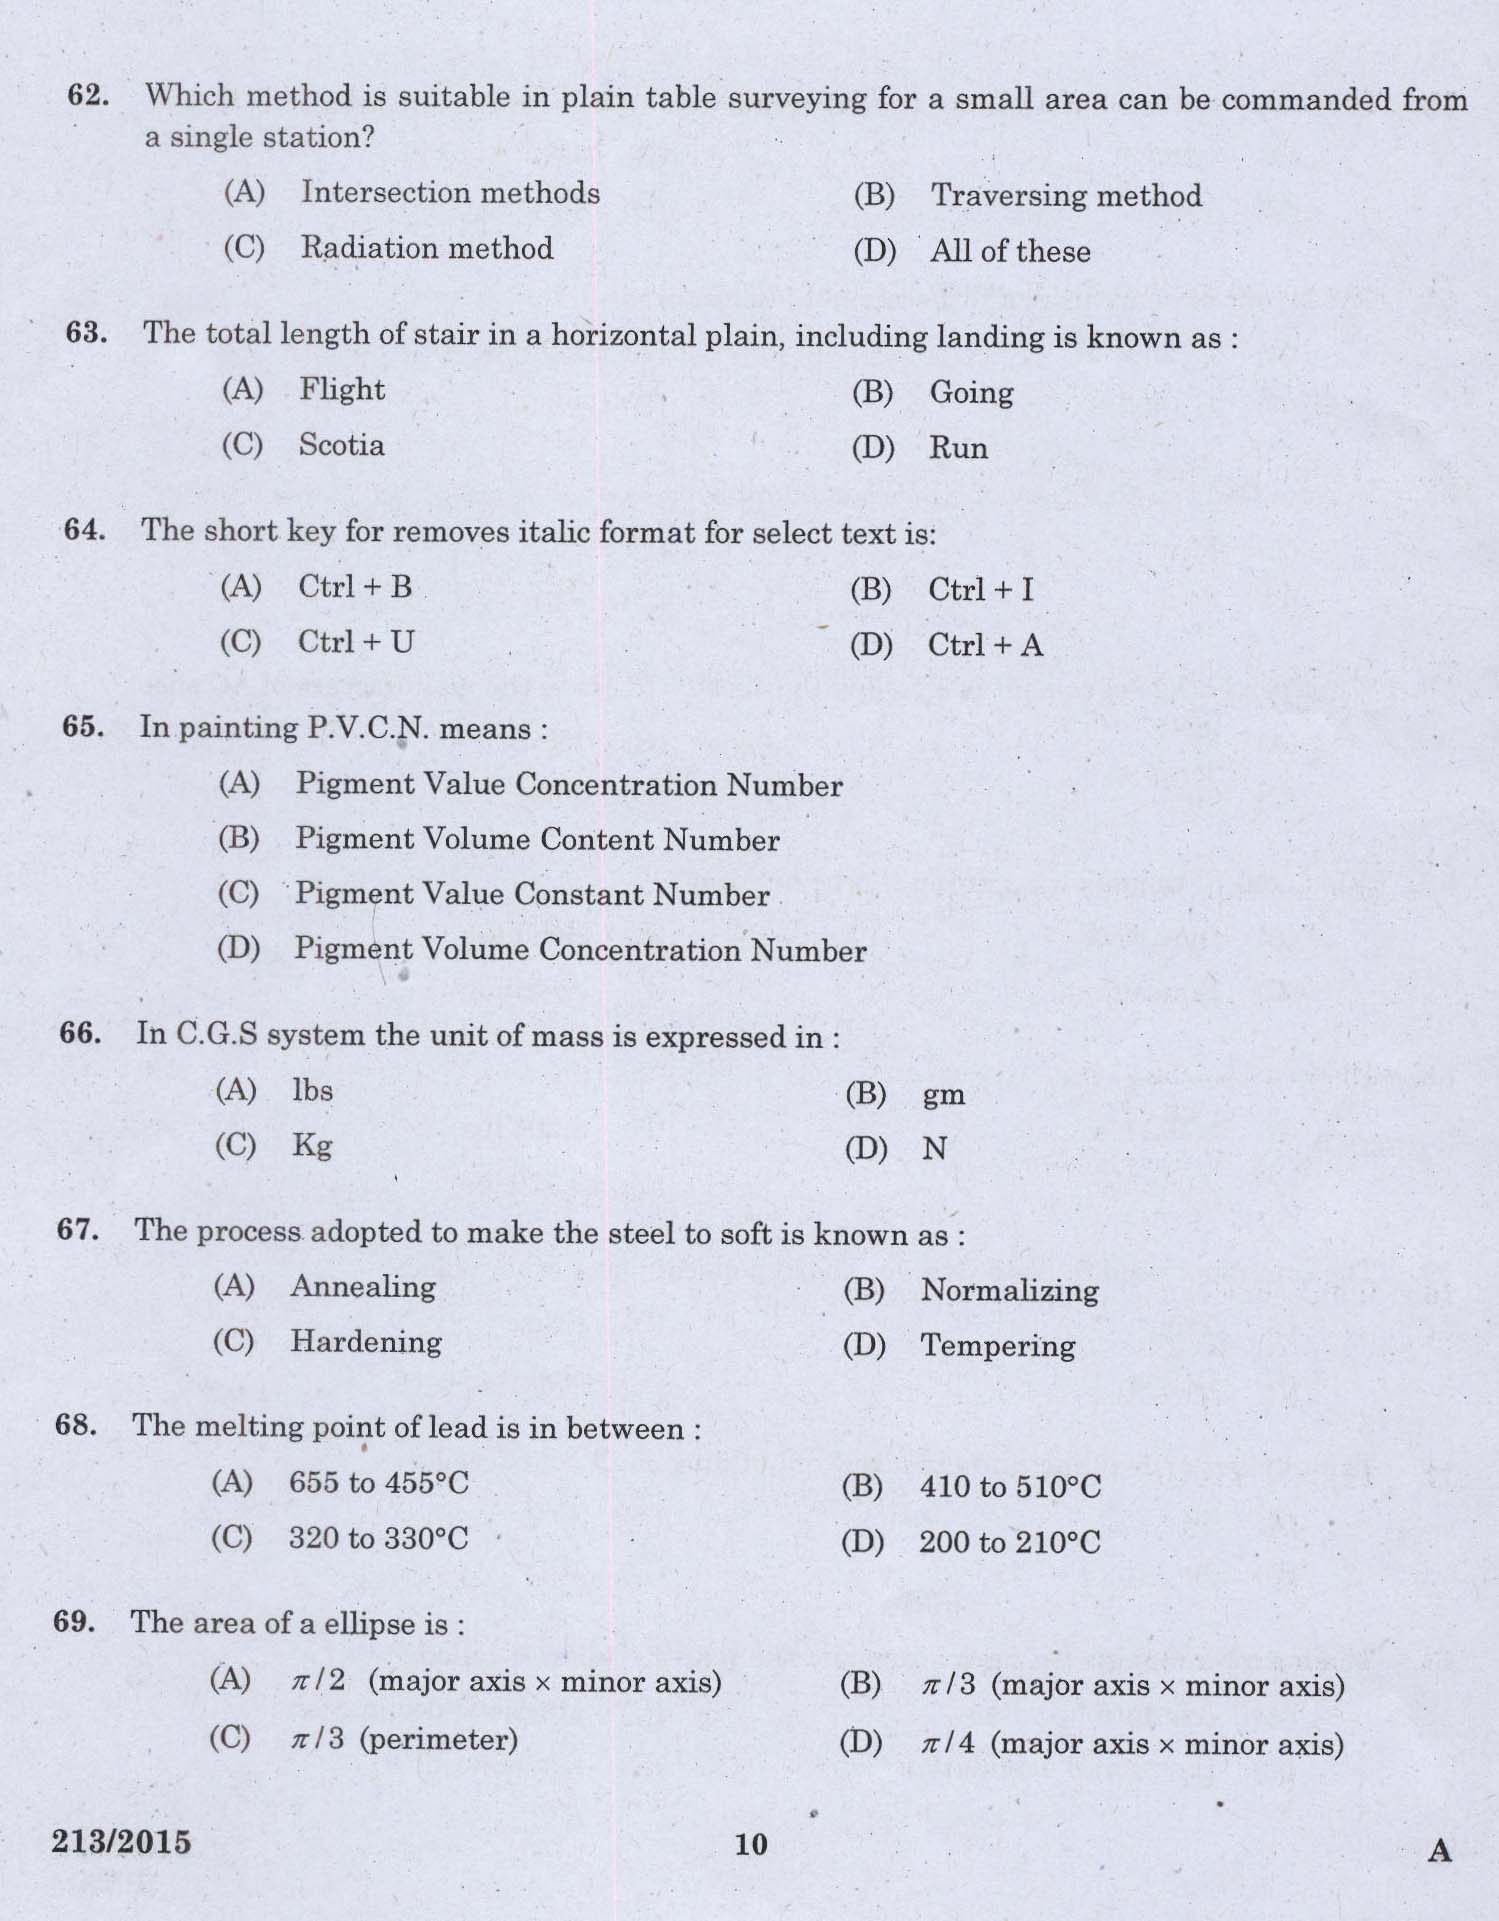 KPSC Second Grade Overseer Exam 2015 Code 2132015 8